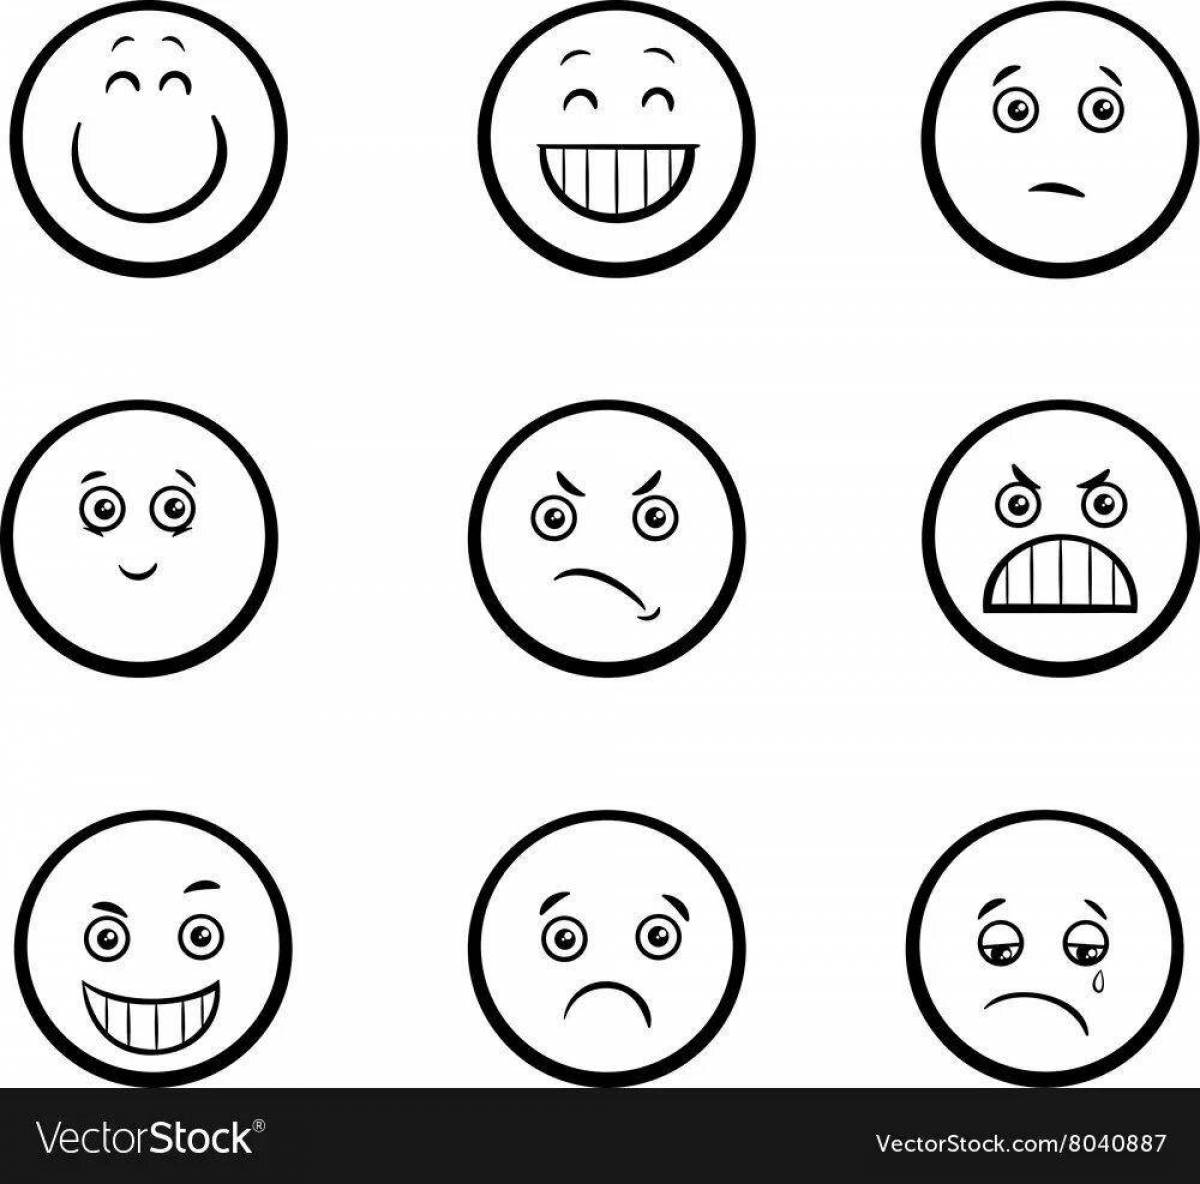 Playful emoji coloring page